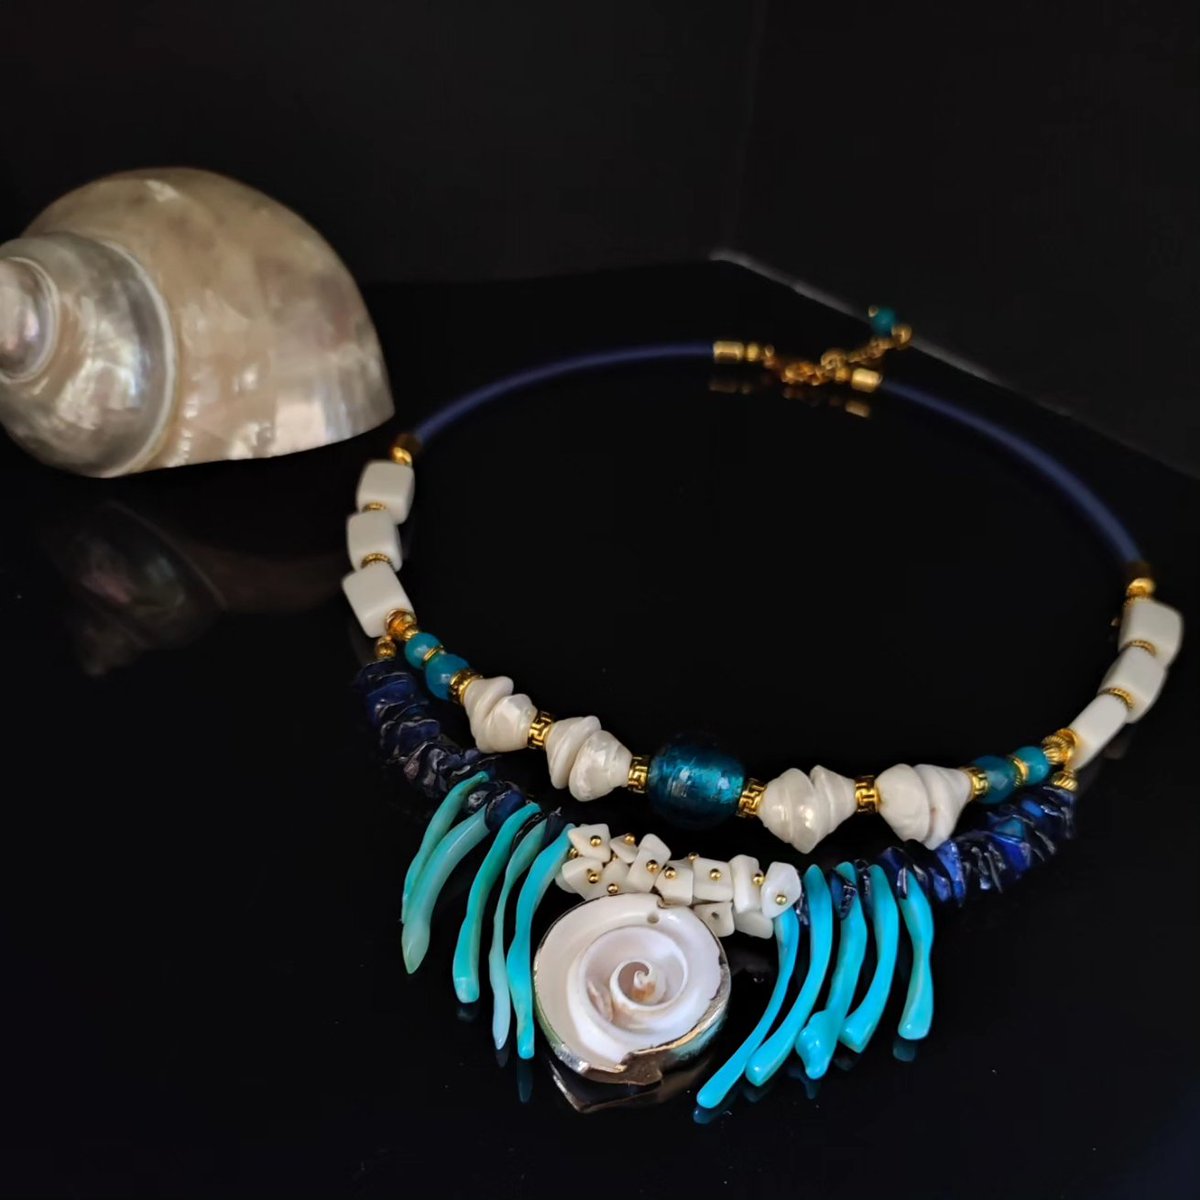 Shell choker necklace 
etsy.com/it/listing/160…
#necklaces #necklace #shellnecklace #choker #artnecklace #necklacestyle #necklacedesign #mecklacemaking #EtsySeller #etsygifts #etsyshopping